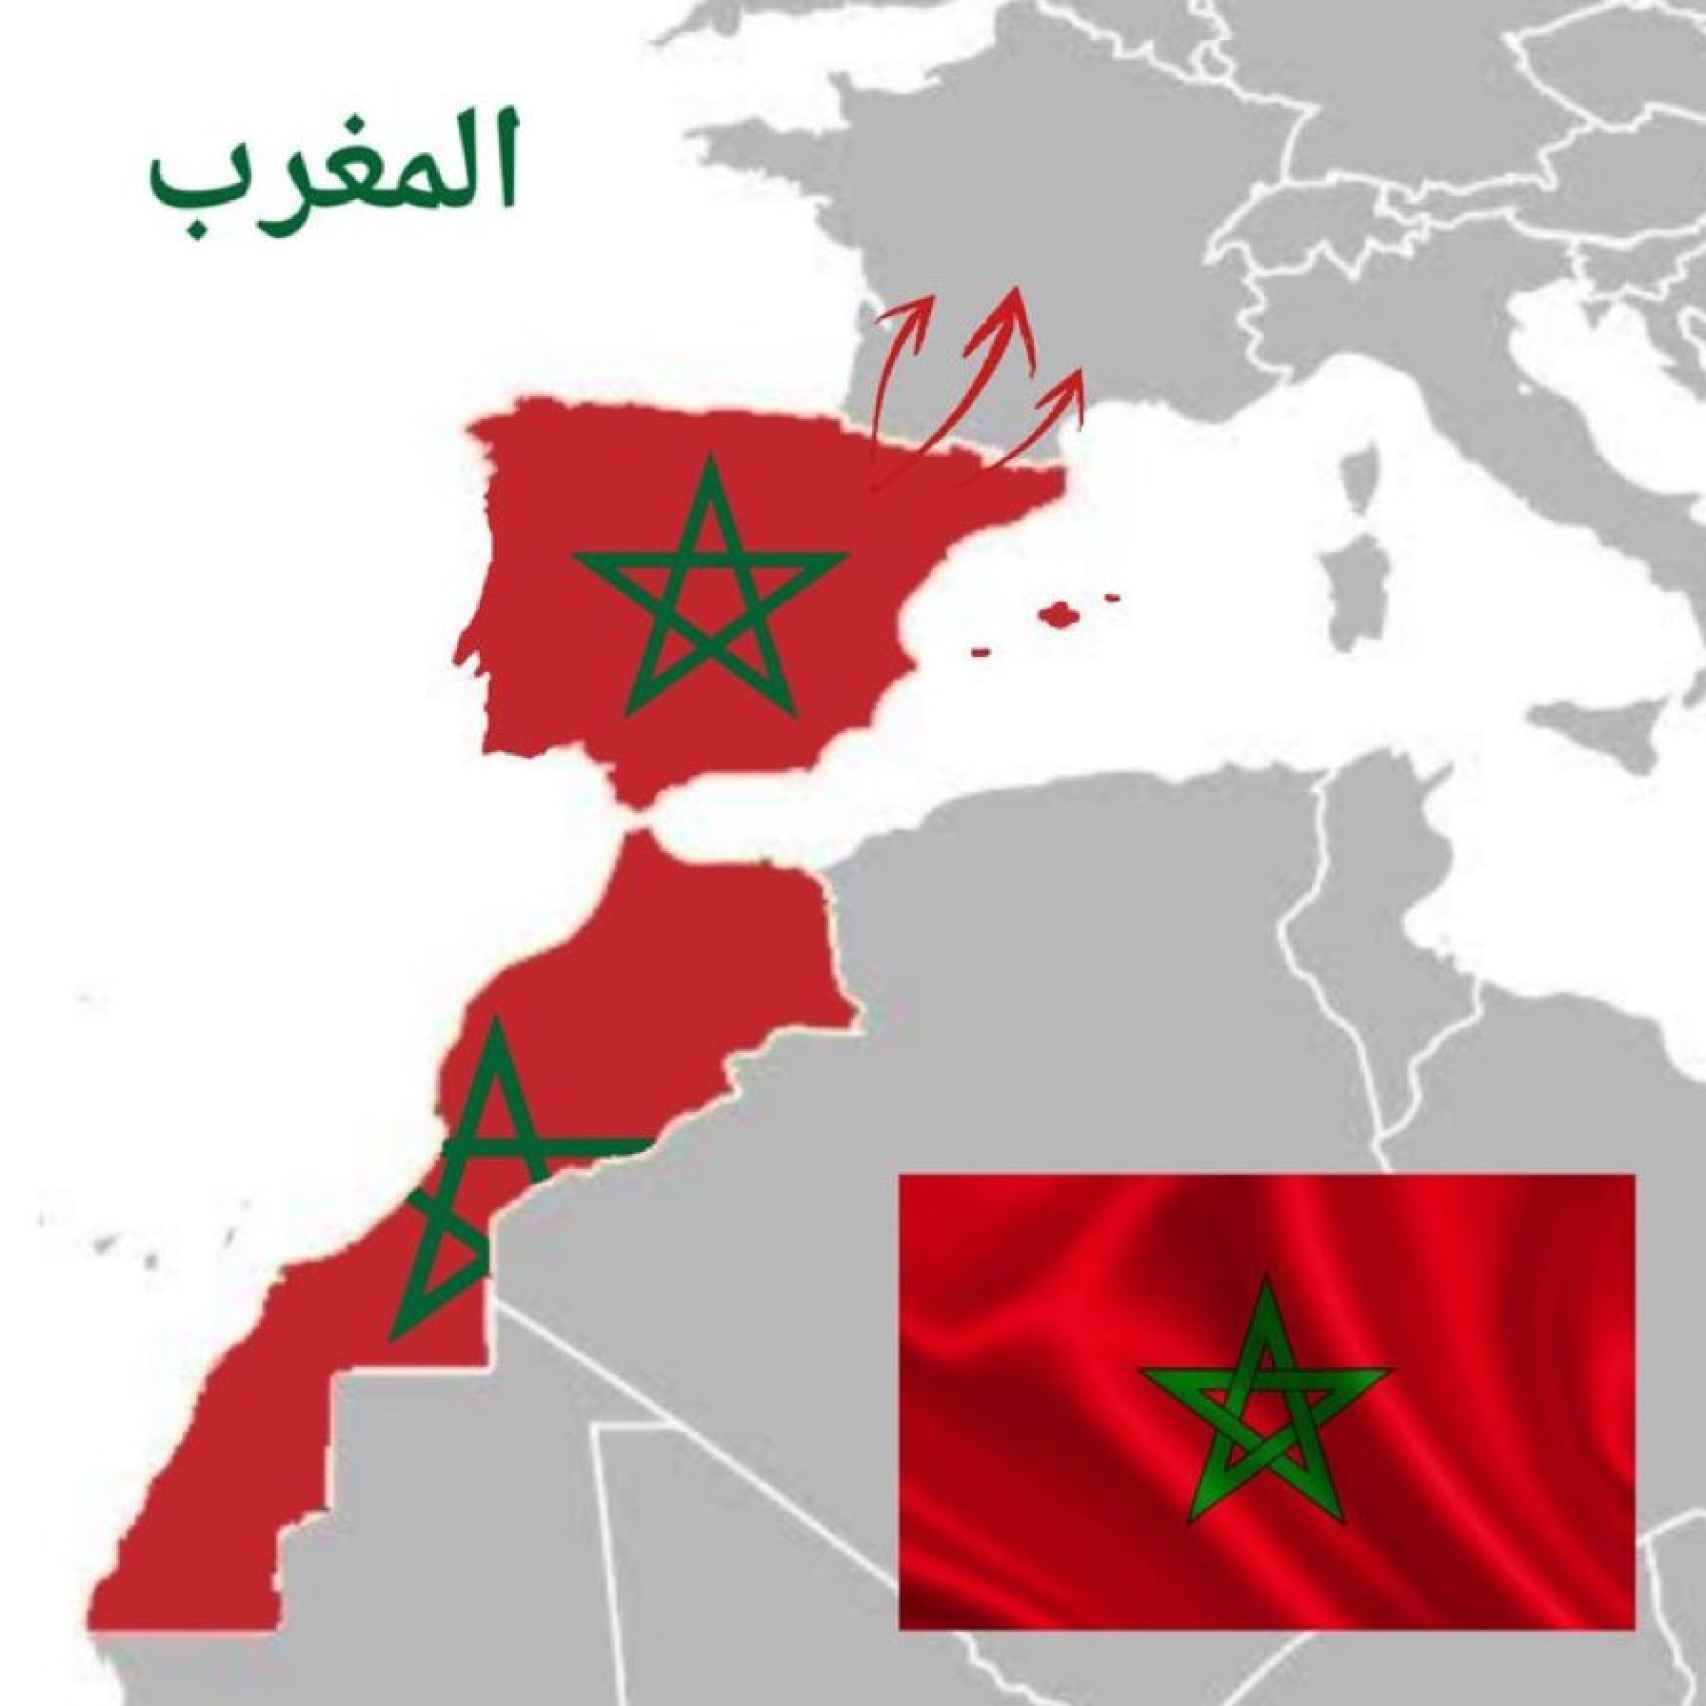 Uno de los mapas expansionistas de Marruecos que circulan por las redes sociales.